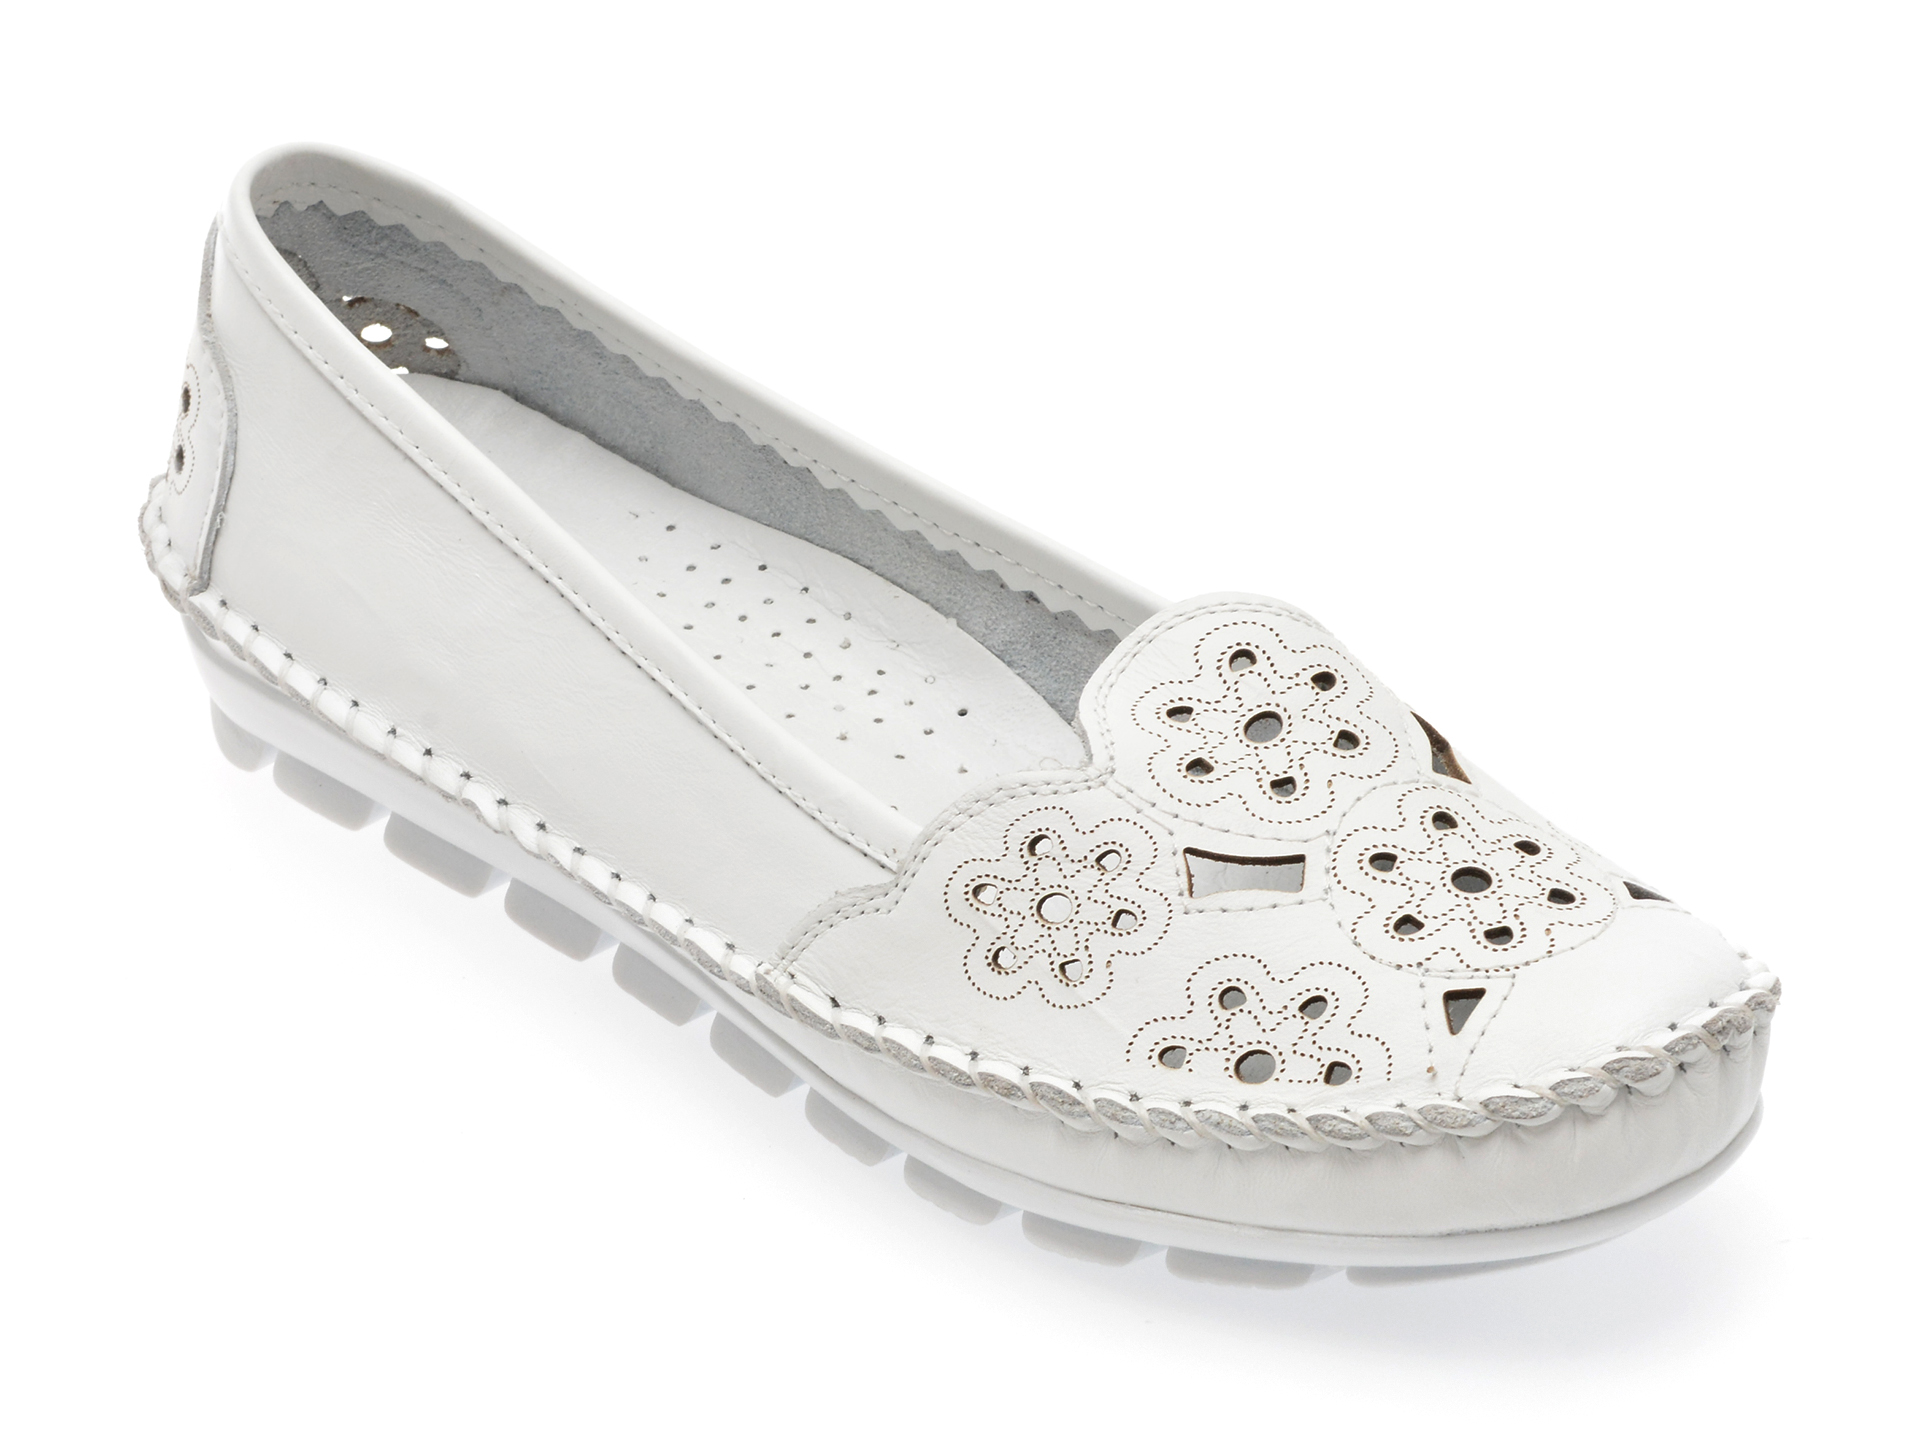 Pantofi casual FLAVIA PASSINI albi, 2336, din piele naturala